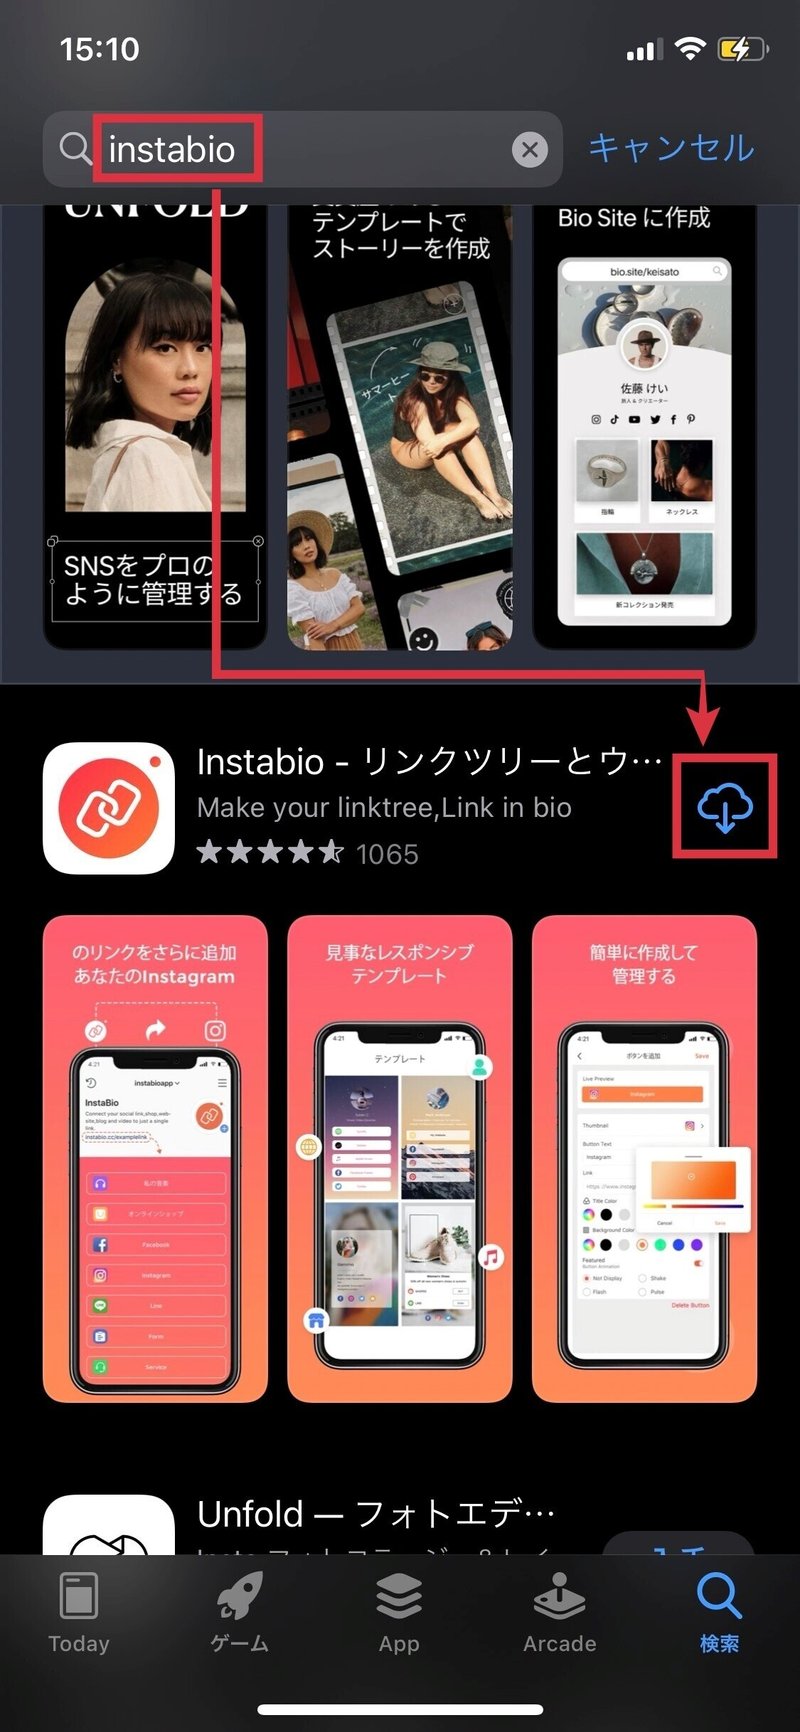 ①instabio（インスタバイオ）のアプリをダウンロードするの画像(編集版)